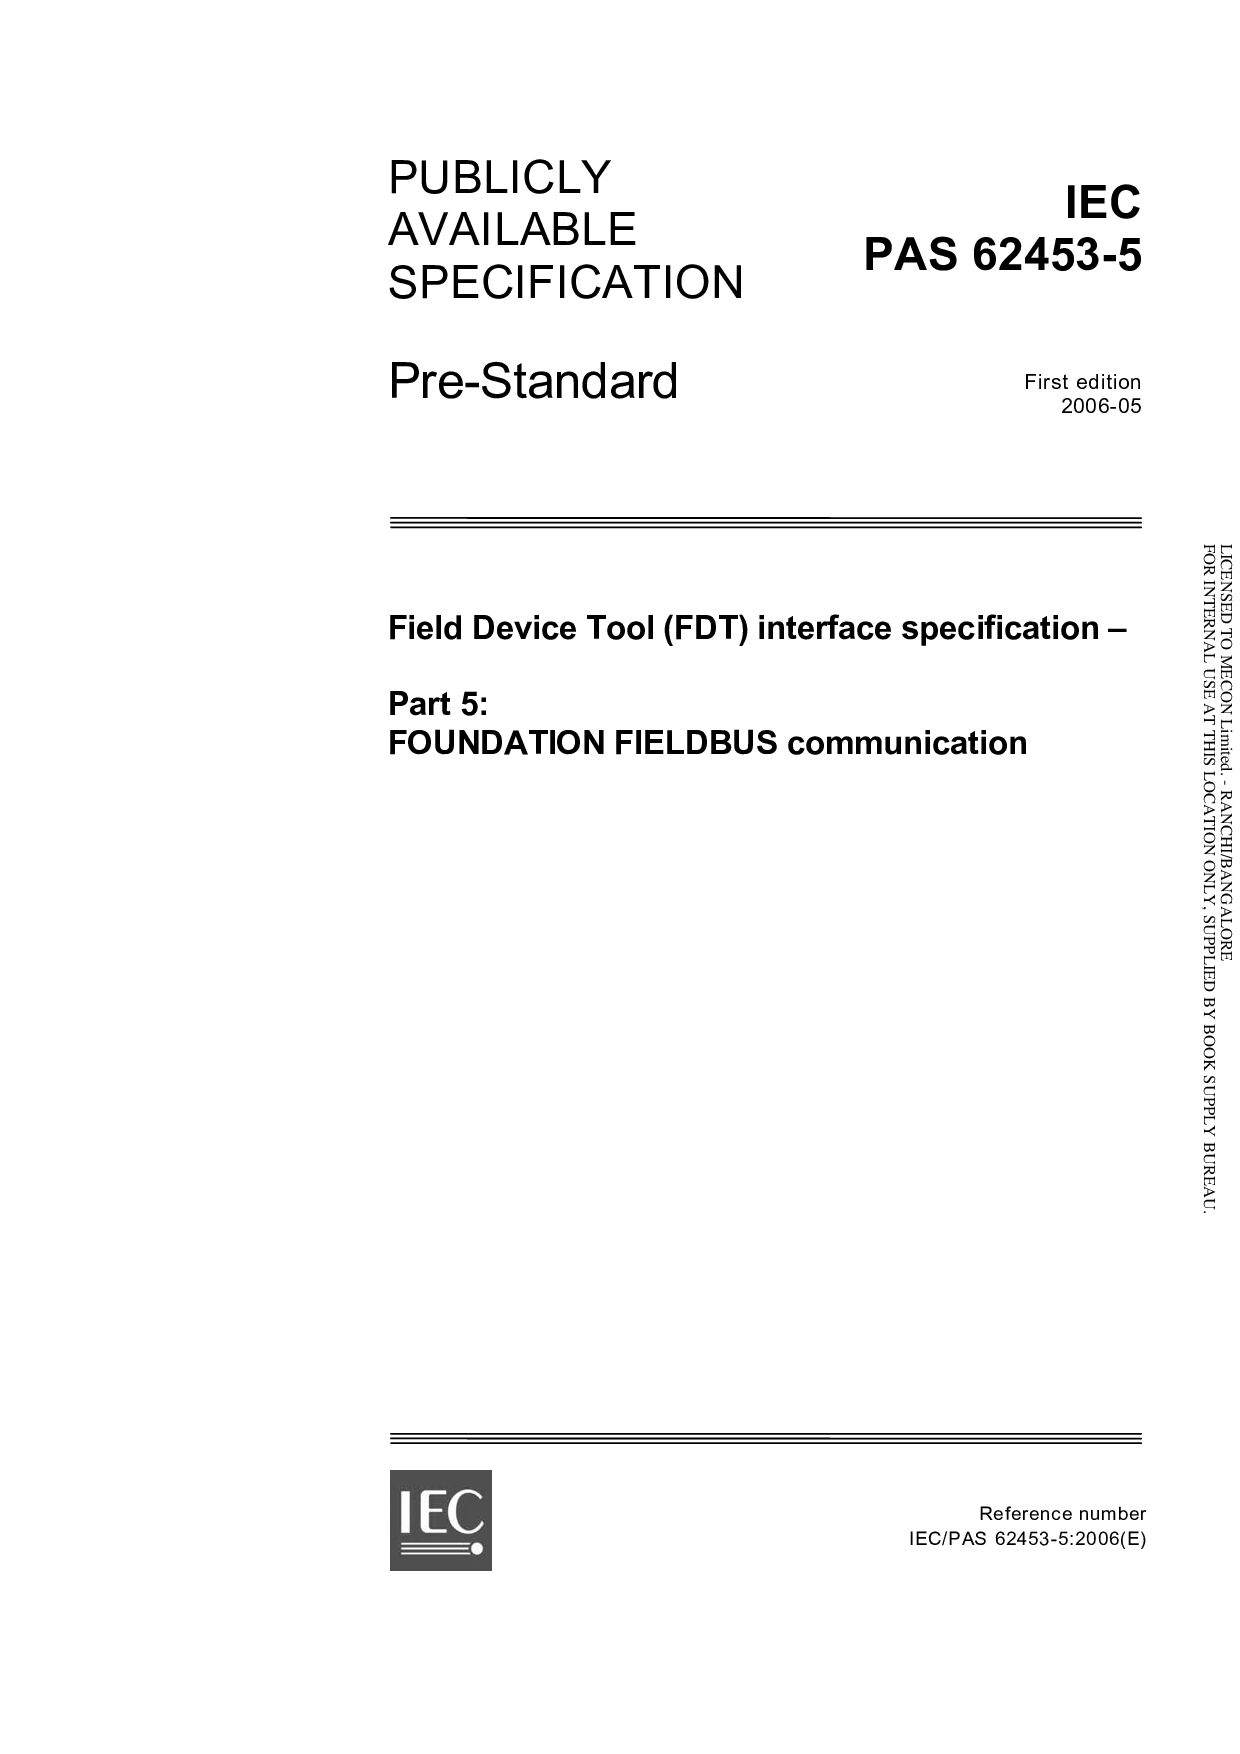 IEC PAS 62453-5:2006